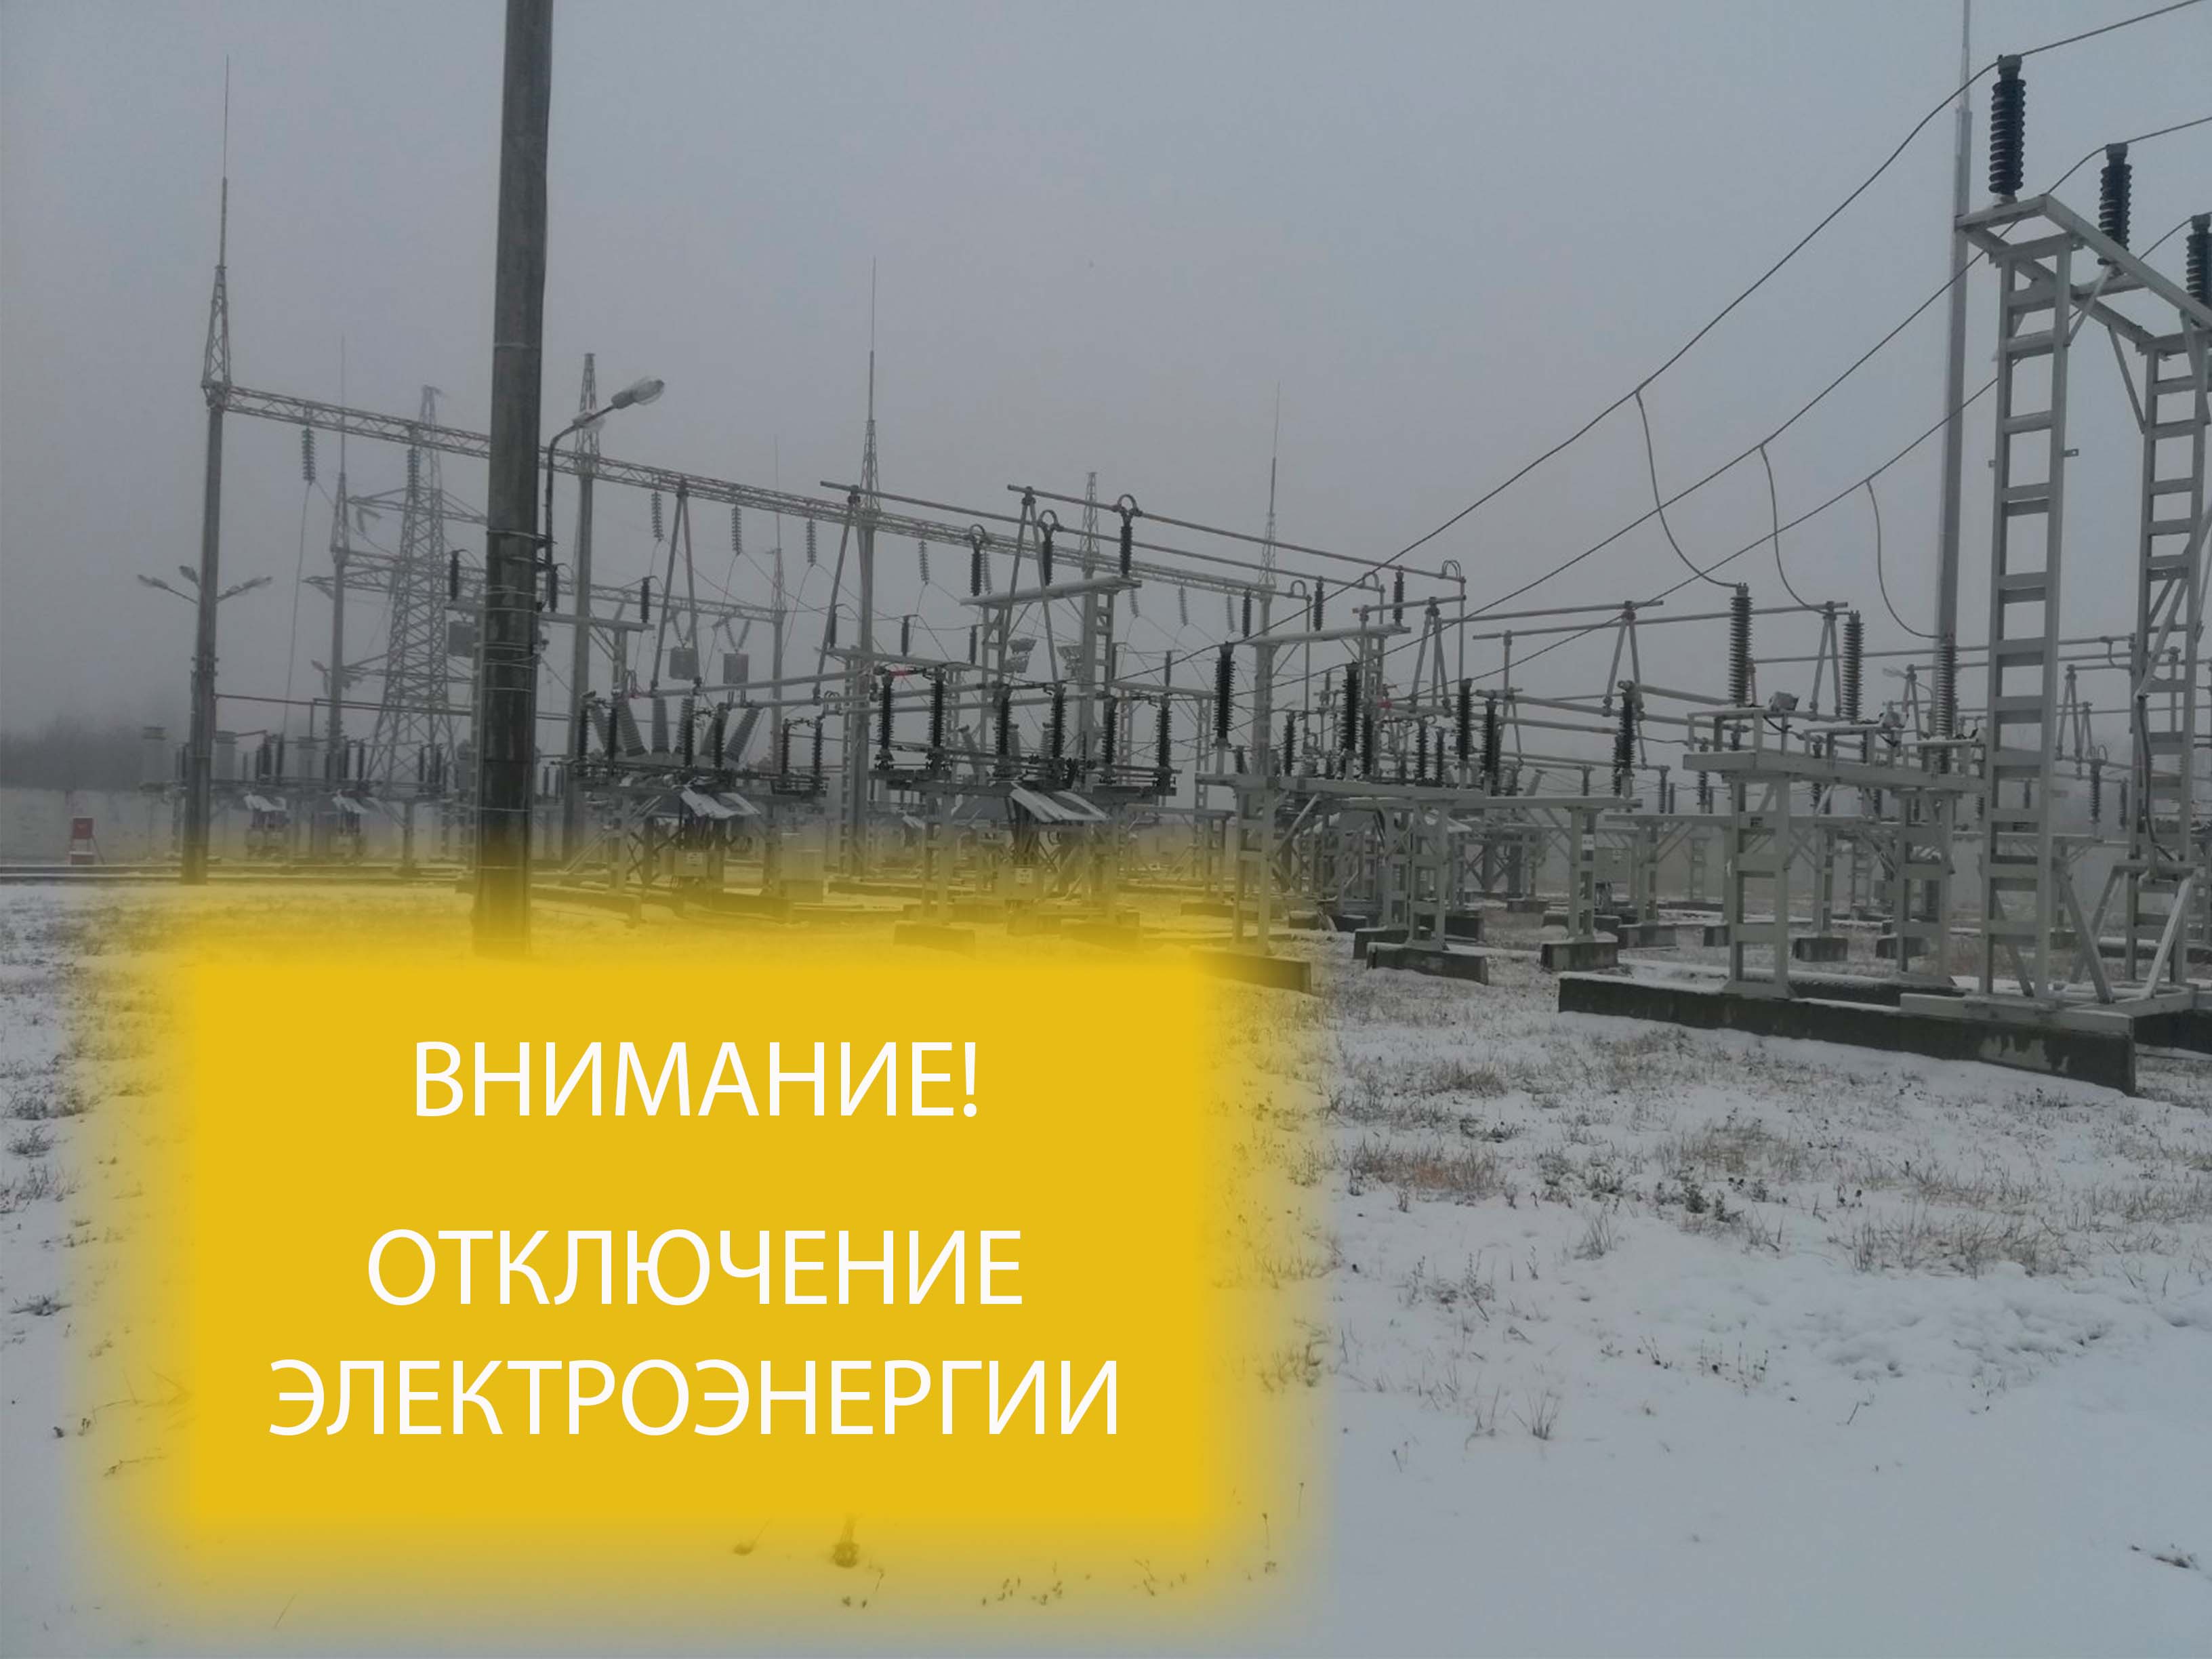 Внимание! Отключение электроэнергии в Александровке и Ухтинке